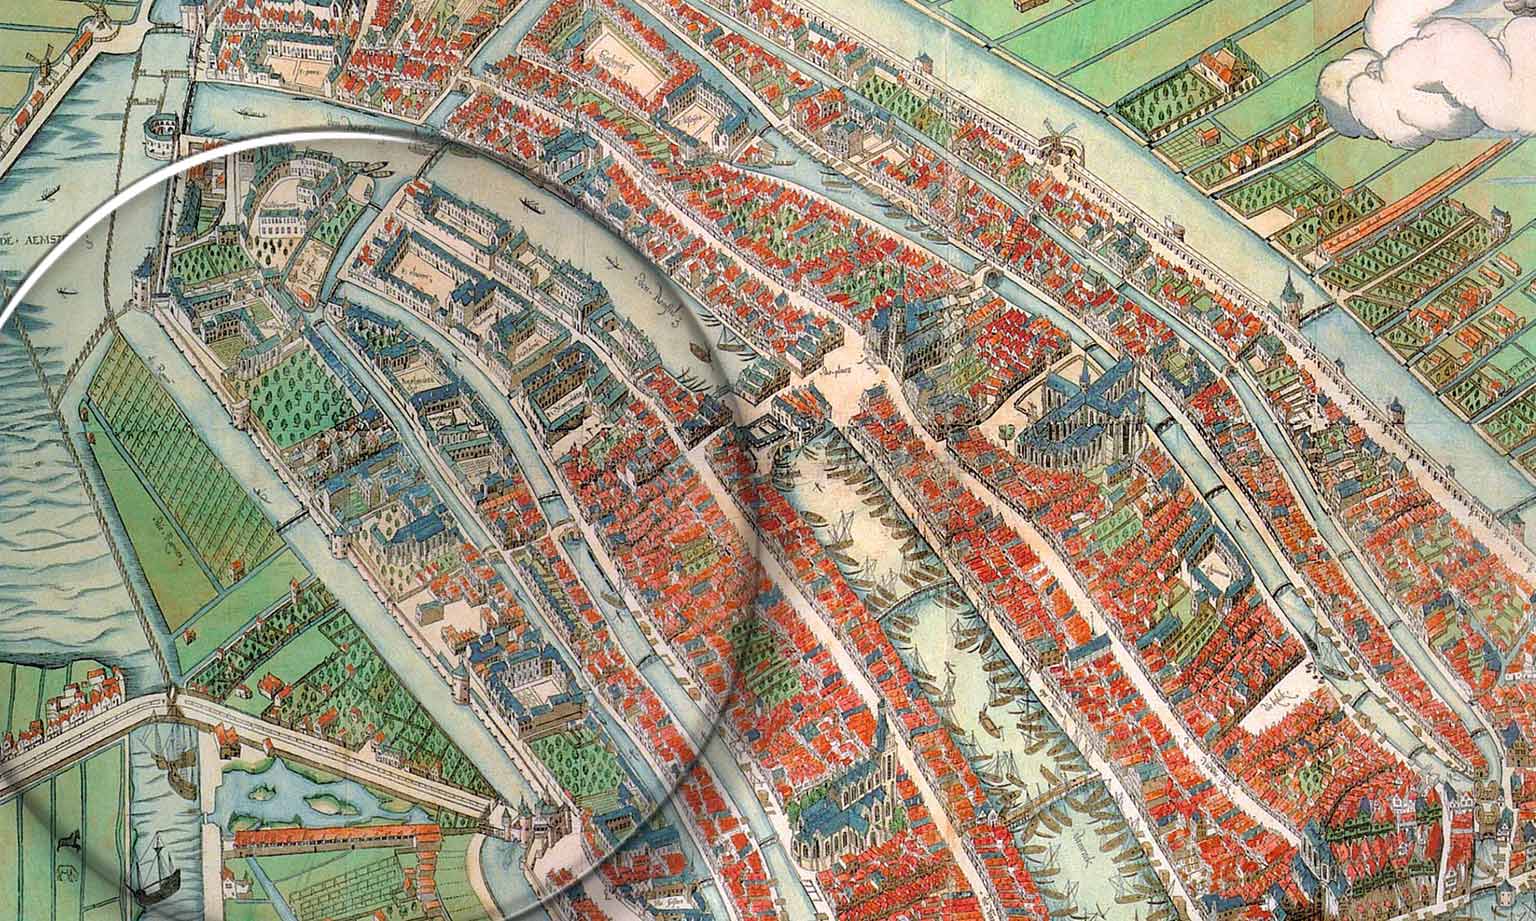 Kloveniersburgwal, Amsterdam, op een kaart uit 1544 van Cornelis Anthonisz